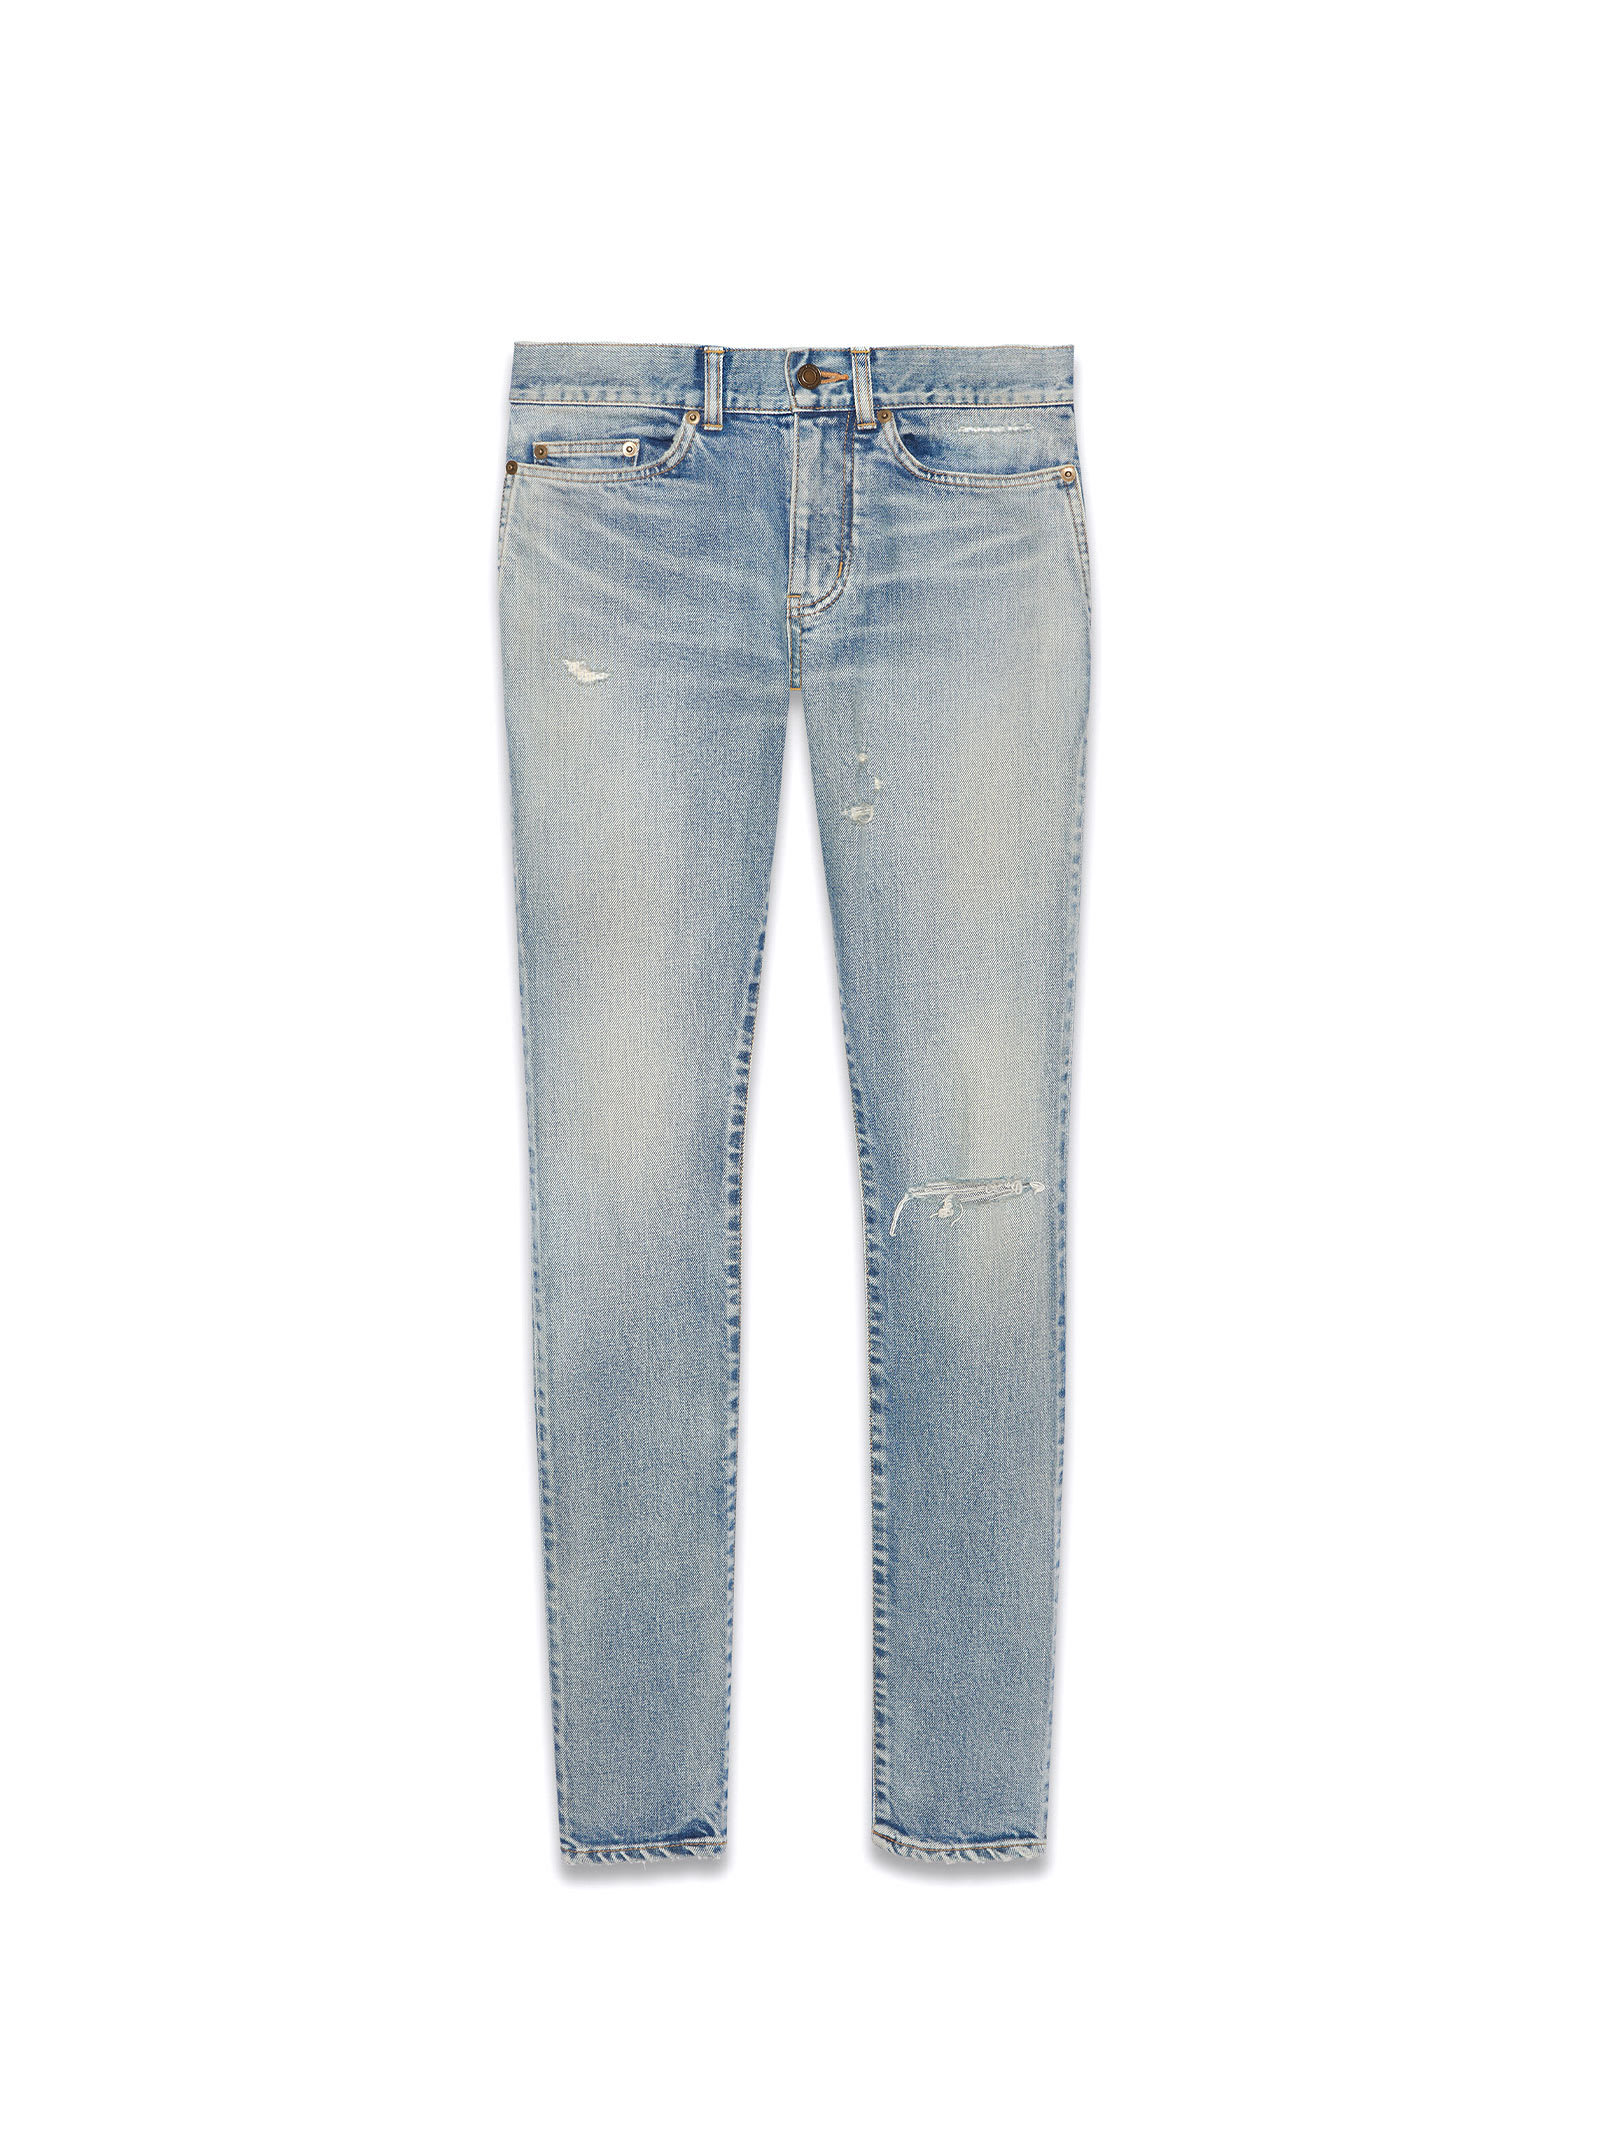 Saint Laurent 5 Pockets Jeans